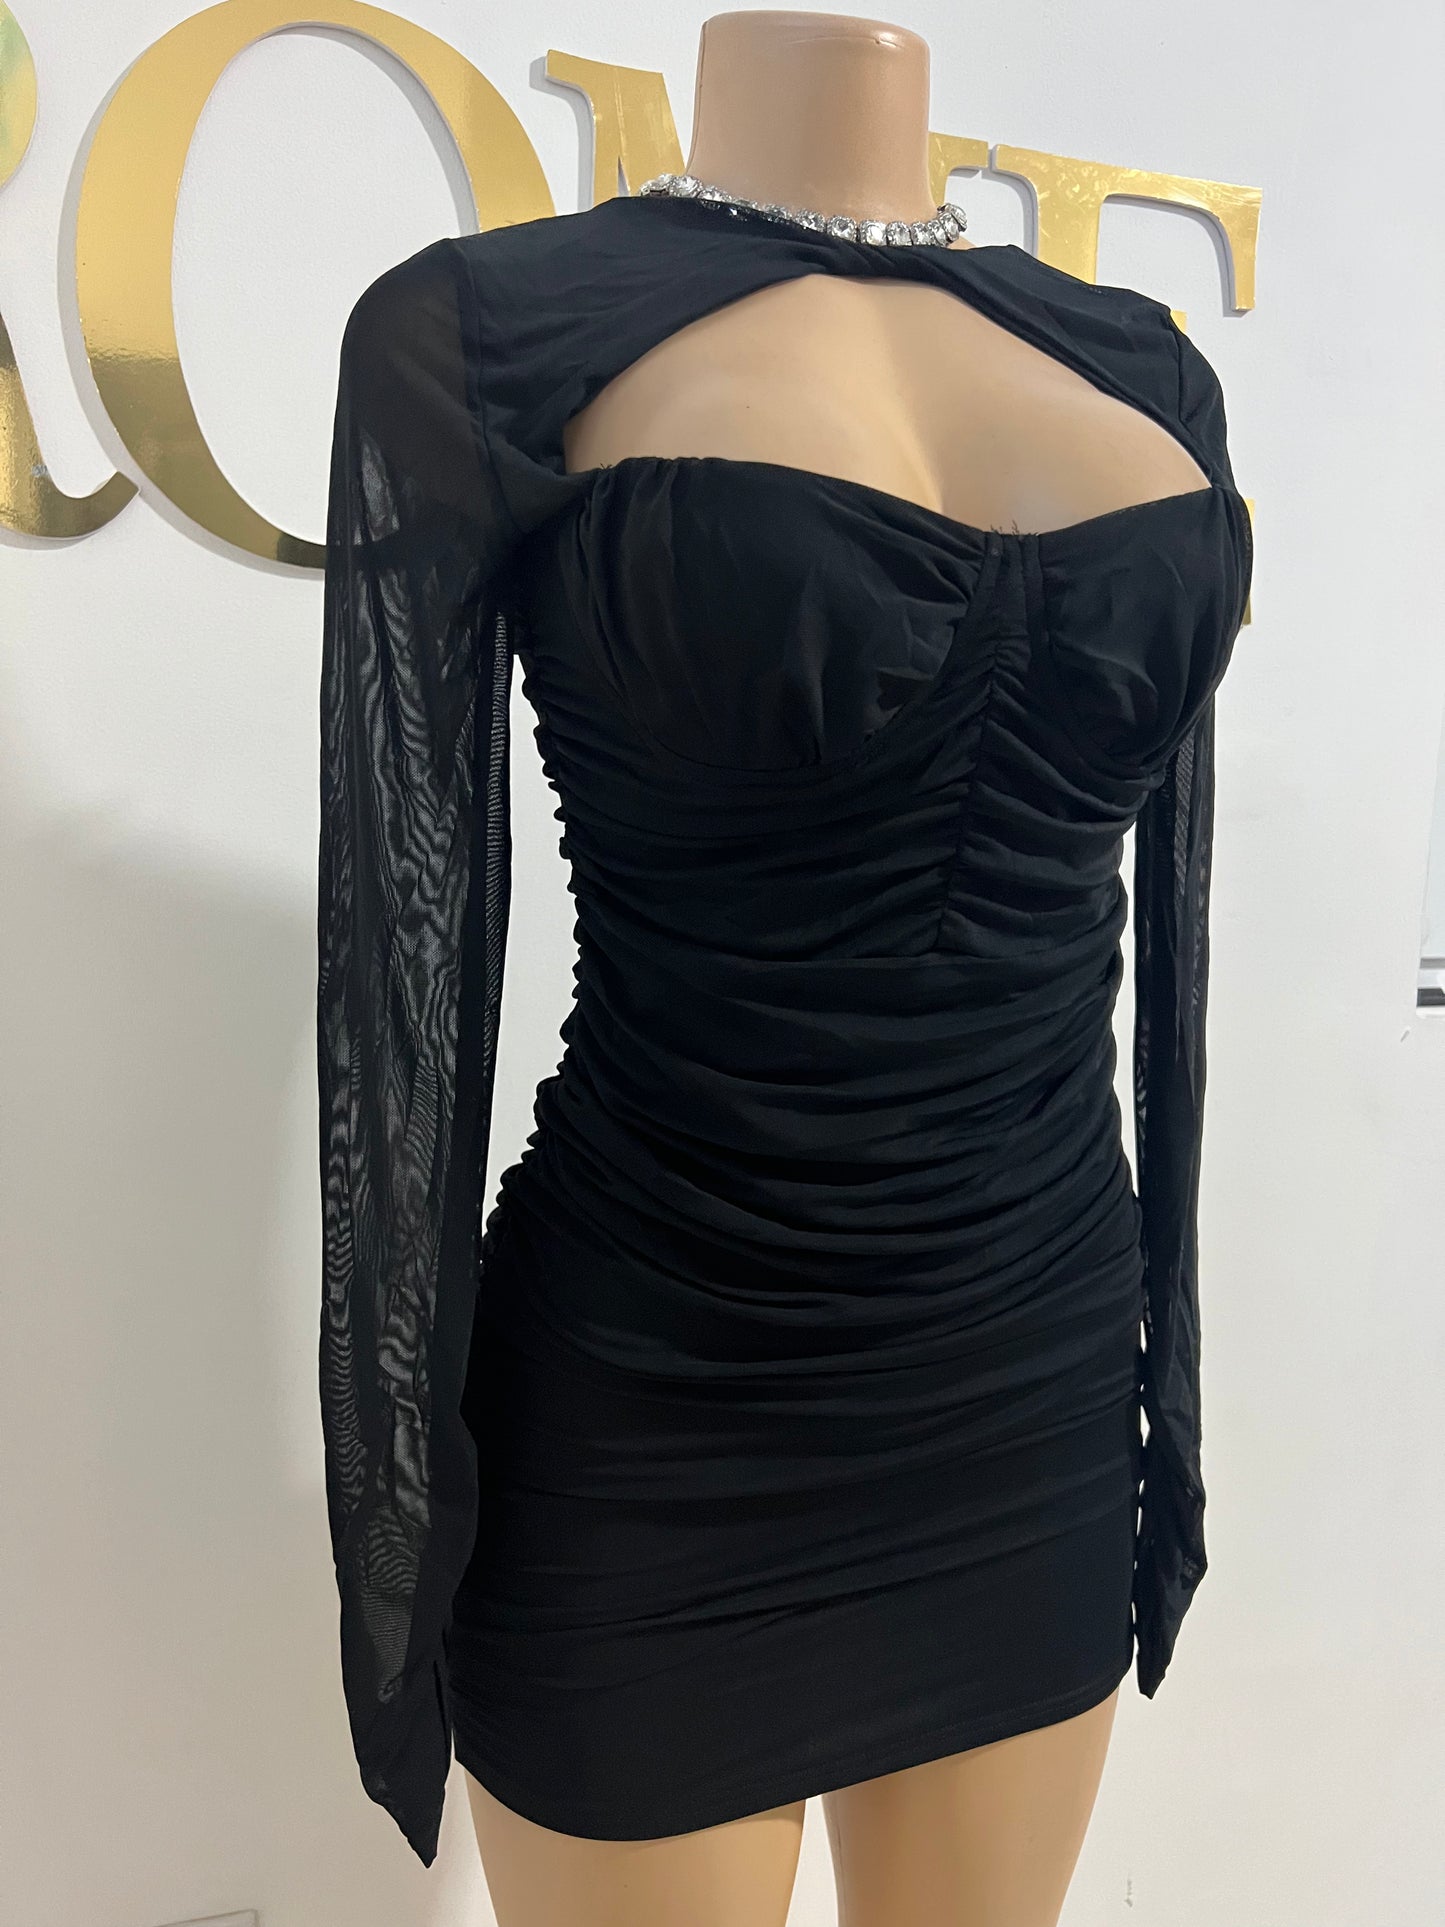 Alison Mini Dress (Black)